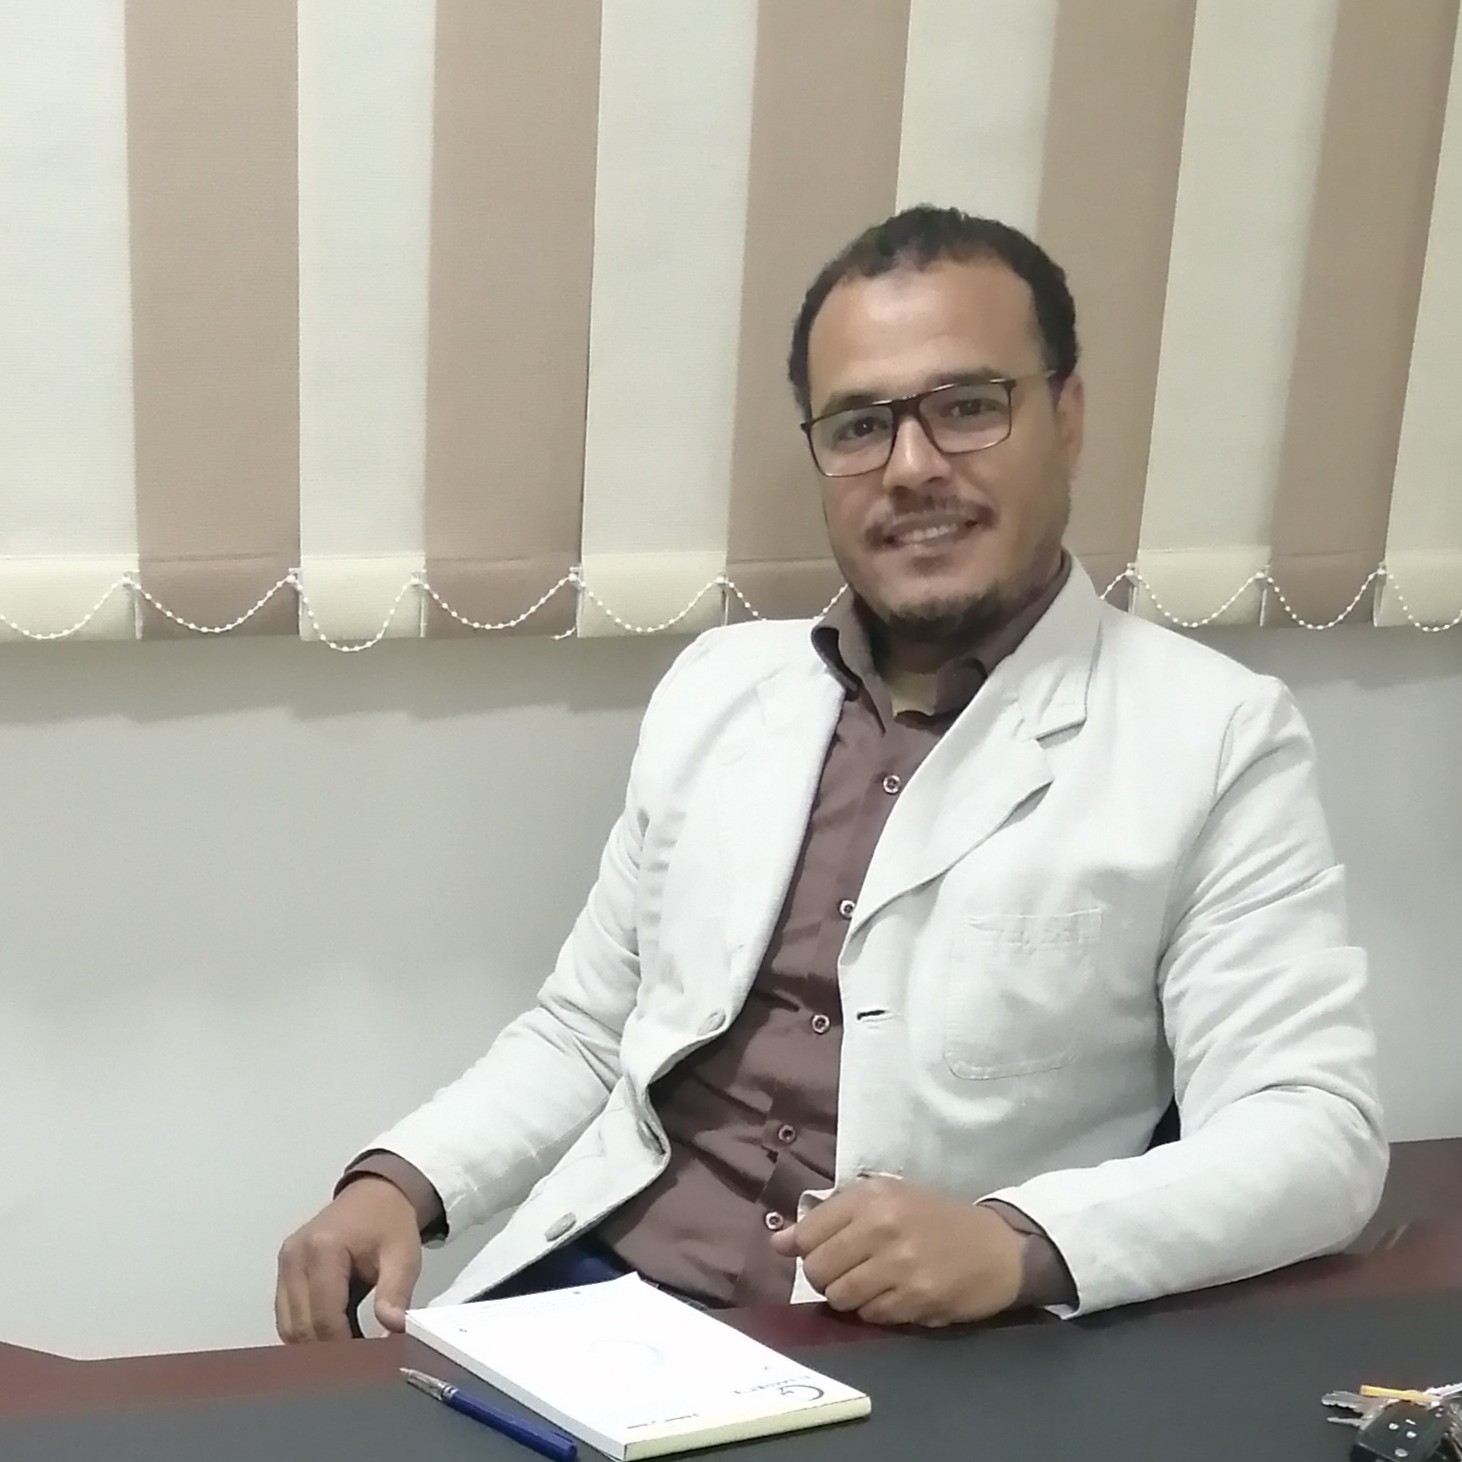 Dr. Hamdan Elsaadi